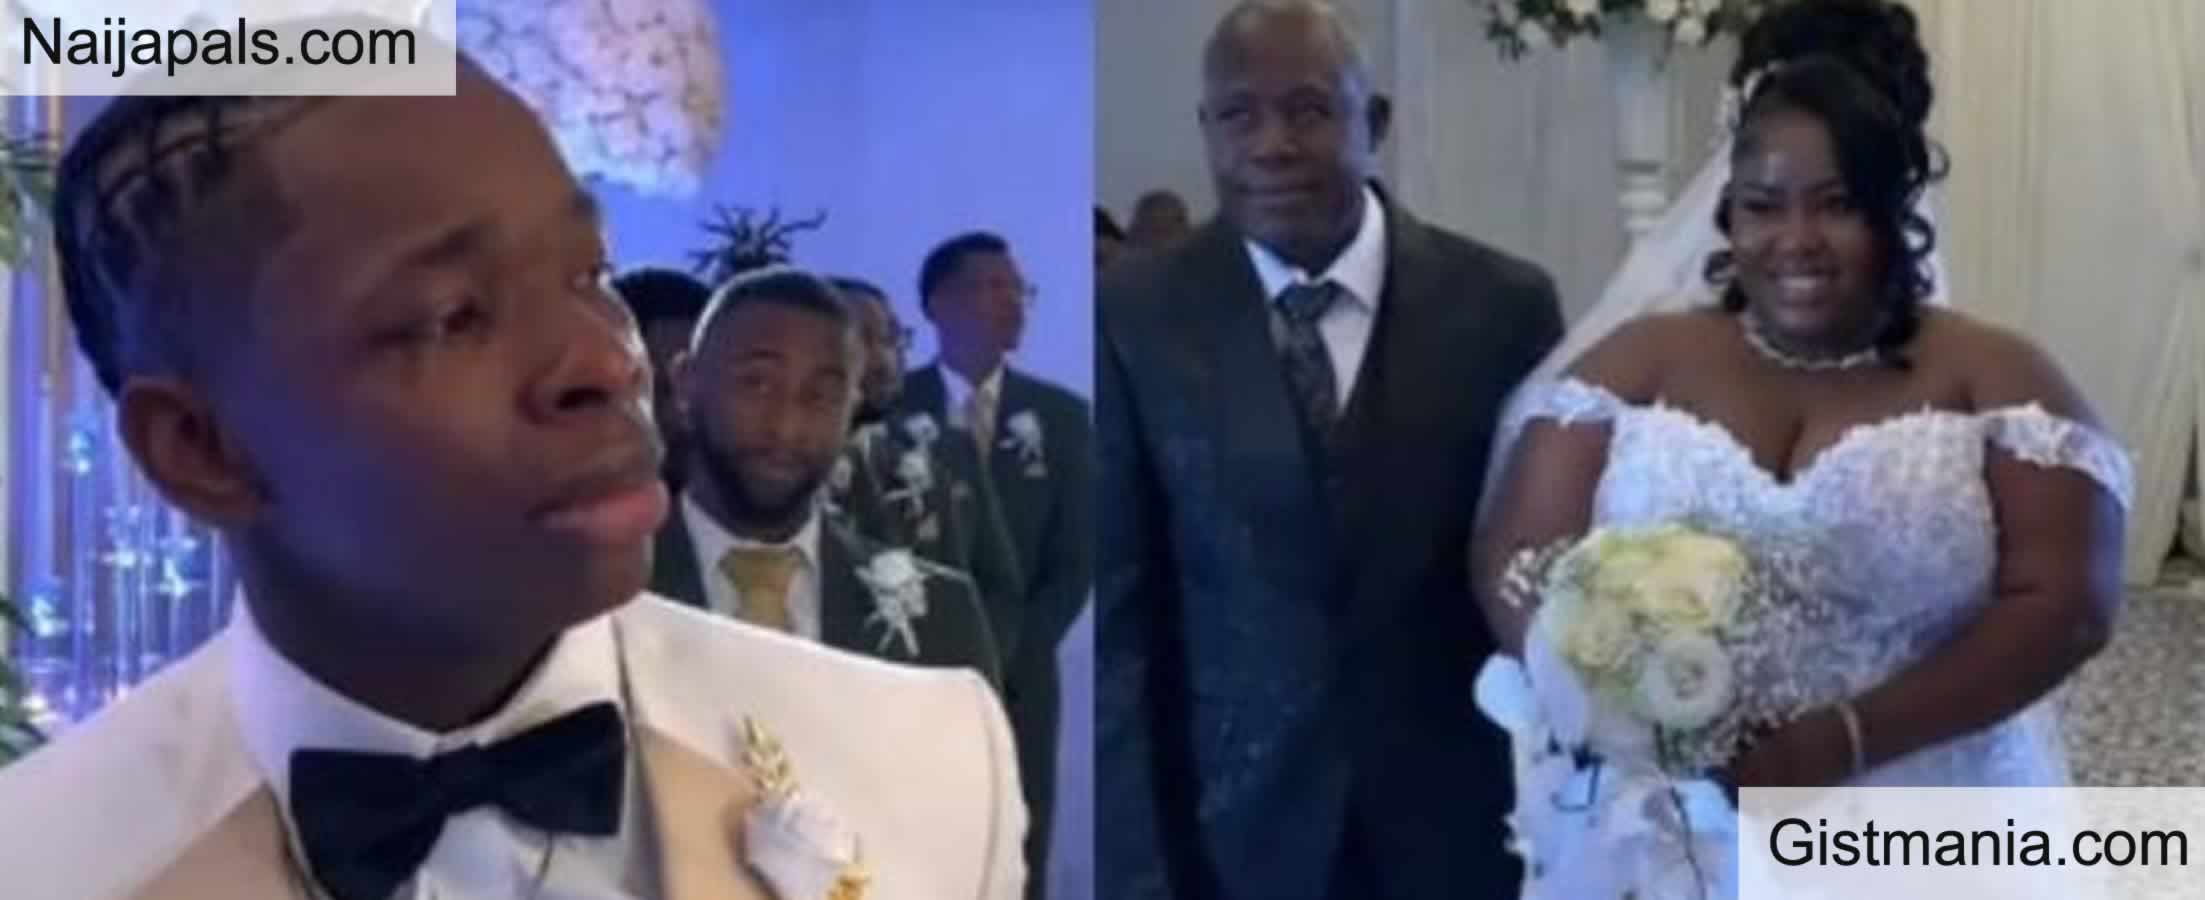 VIDEO: Groom Breaks Down In Tears As Bride Walks To Him On Wedding Day